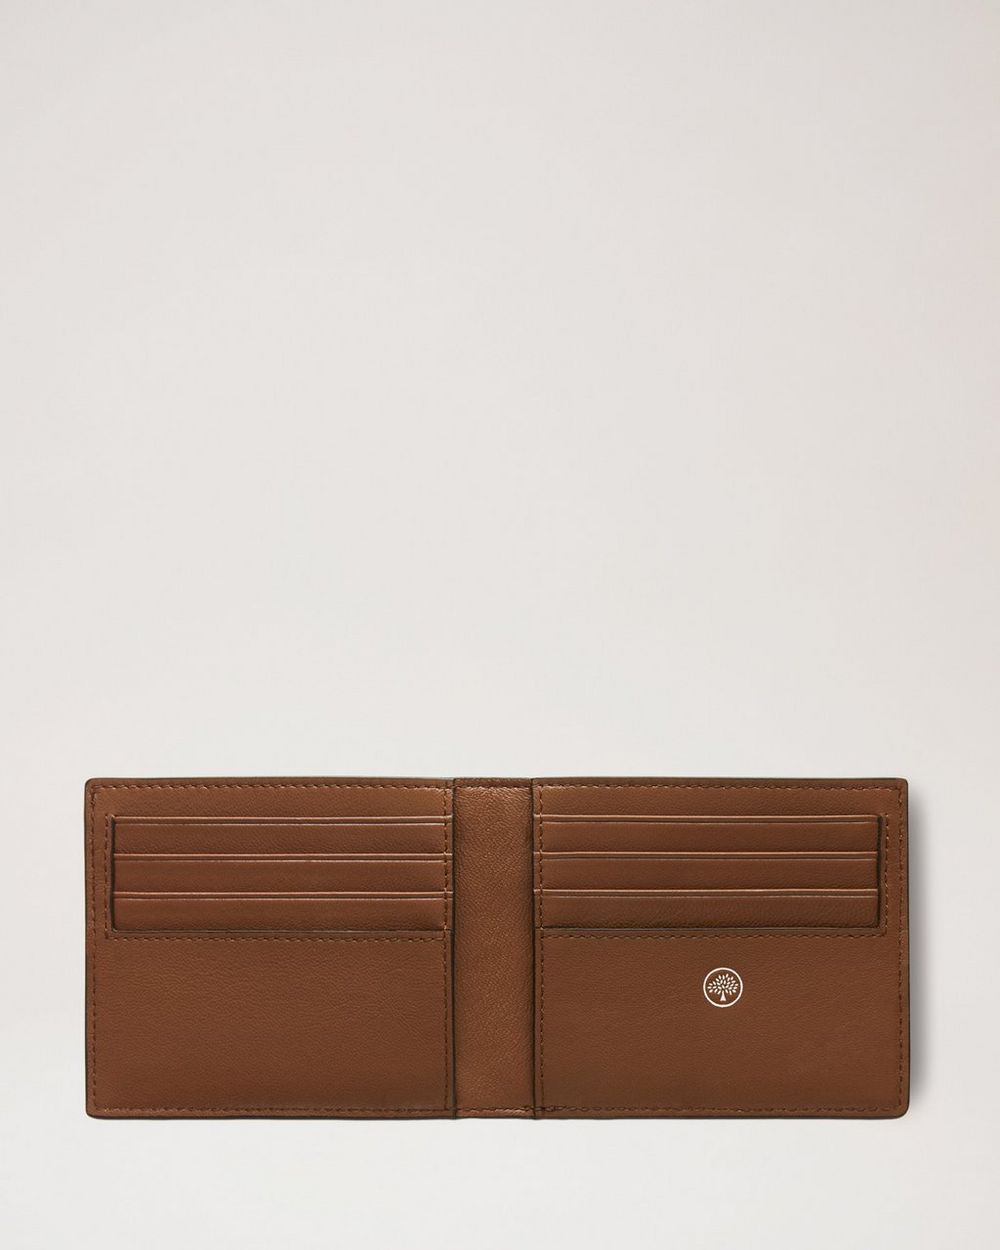 8 Card Wallet Oak Natural Grain, Leather Photo Album 4×6